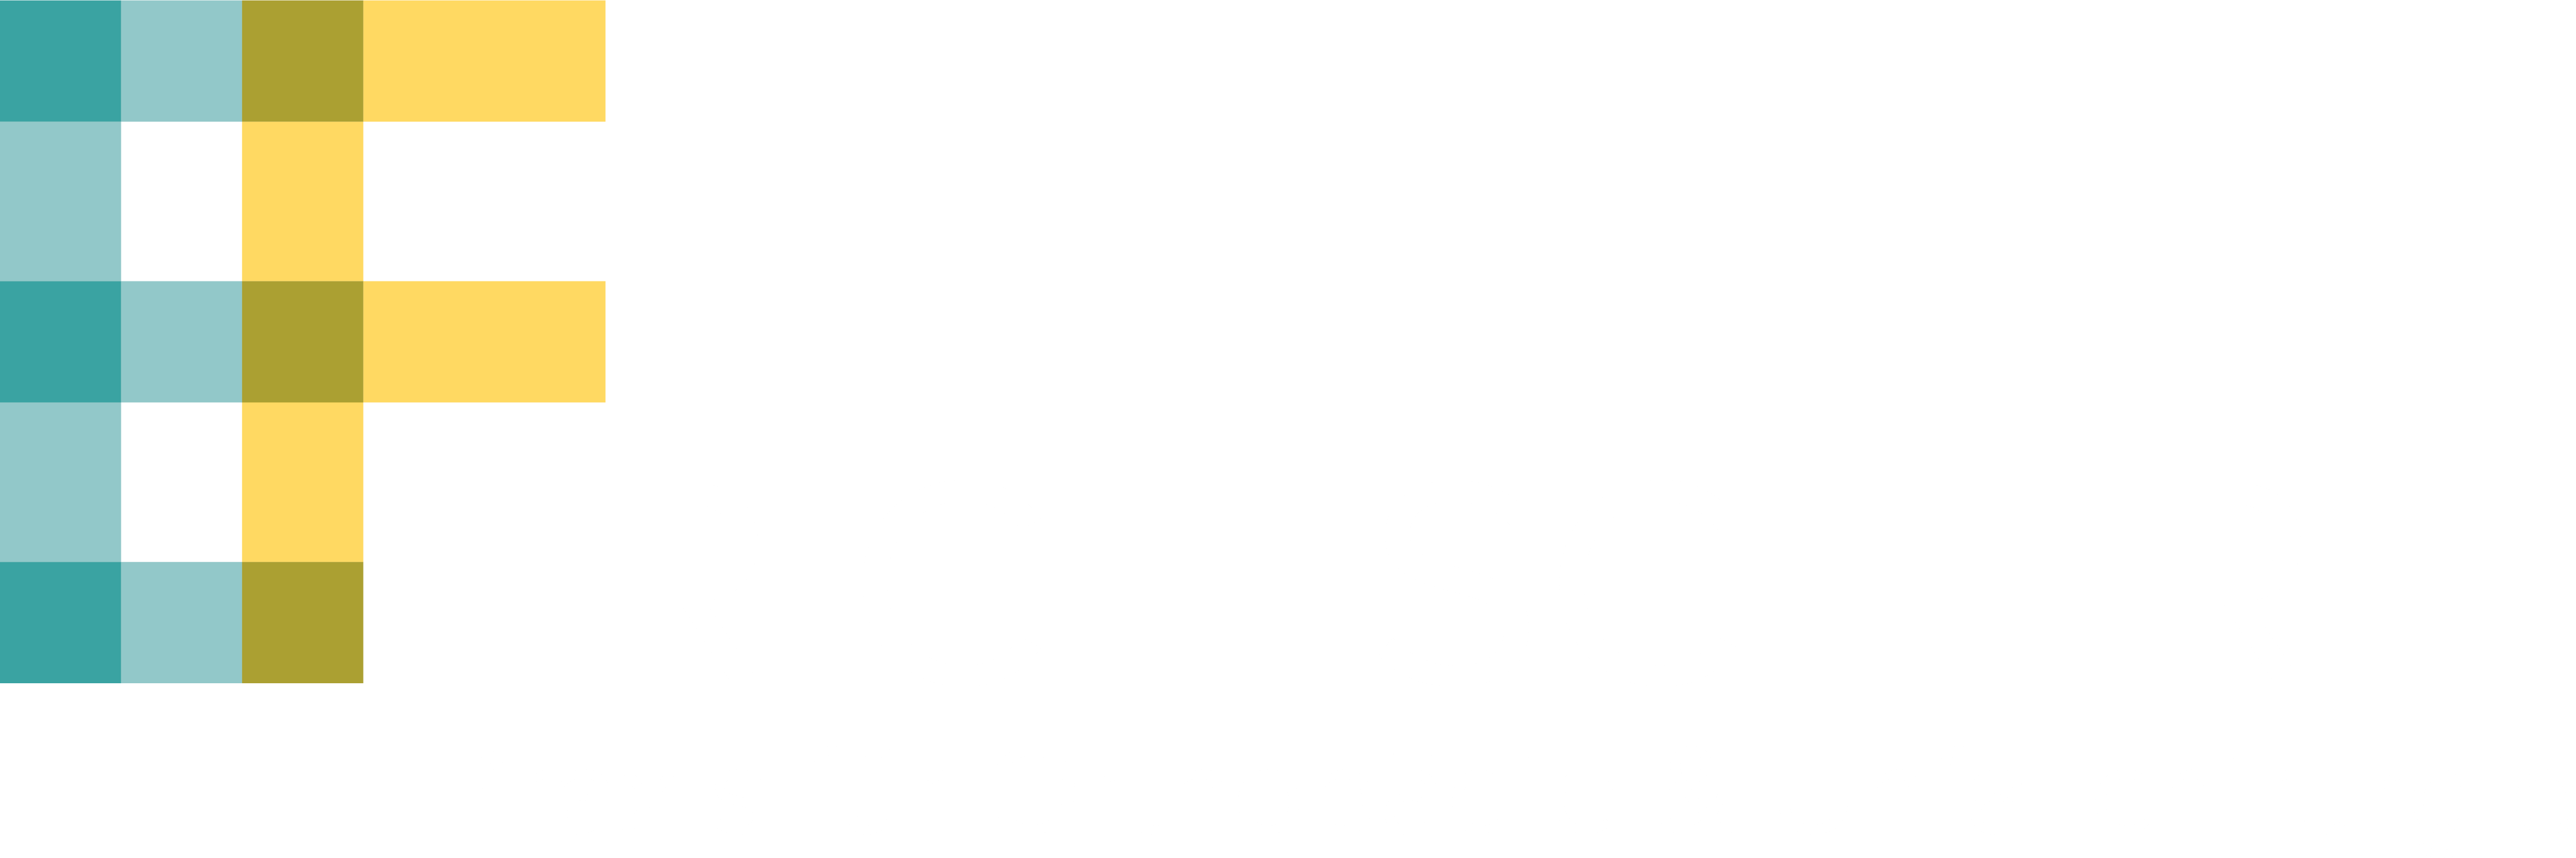 Eric Fischer - Facharzt für Orthopädie & Unfallchirurgie